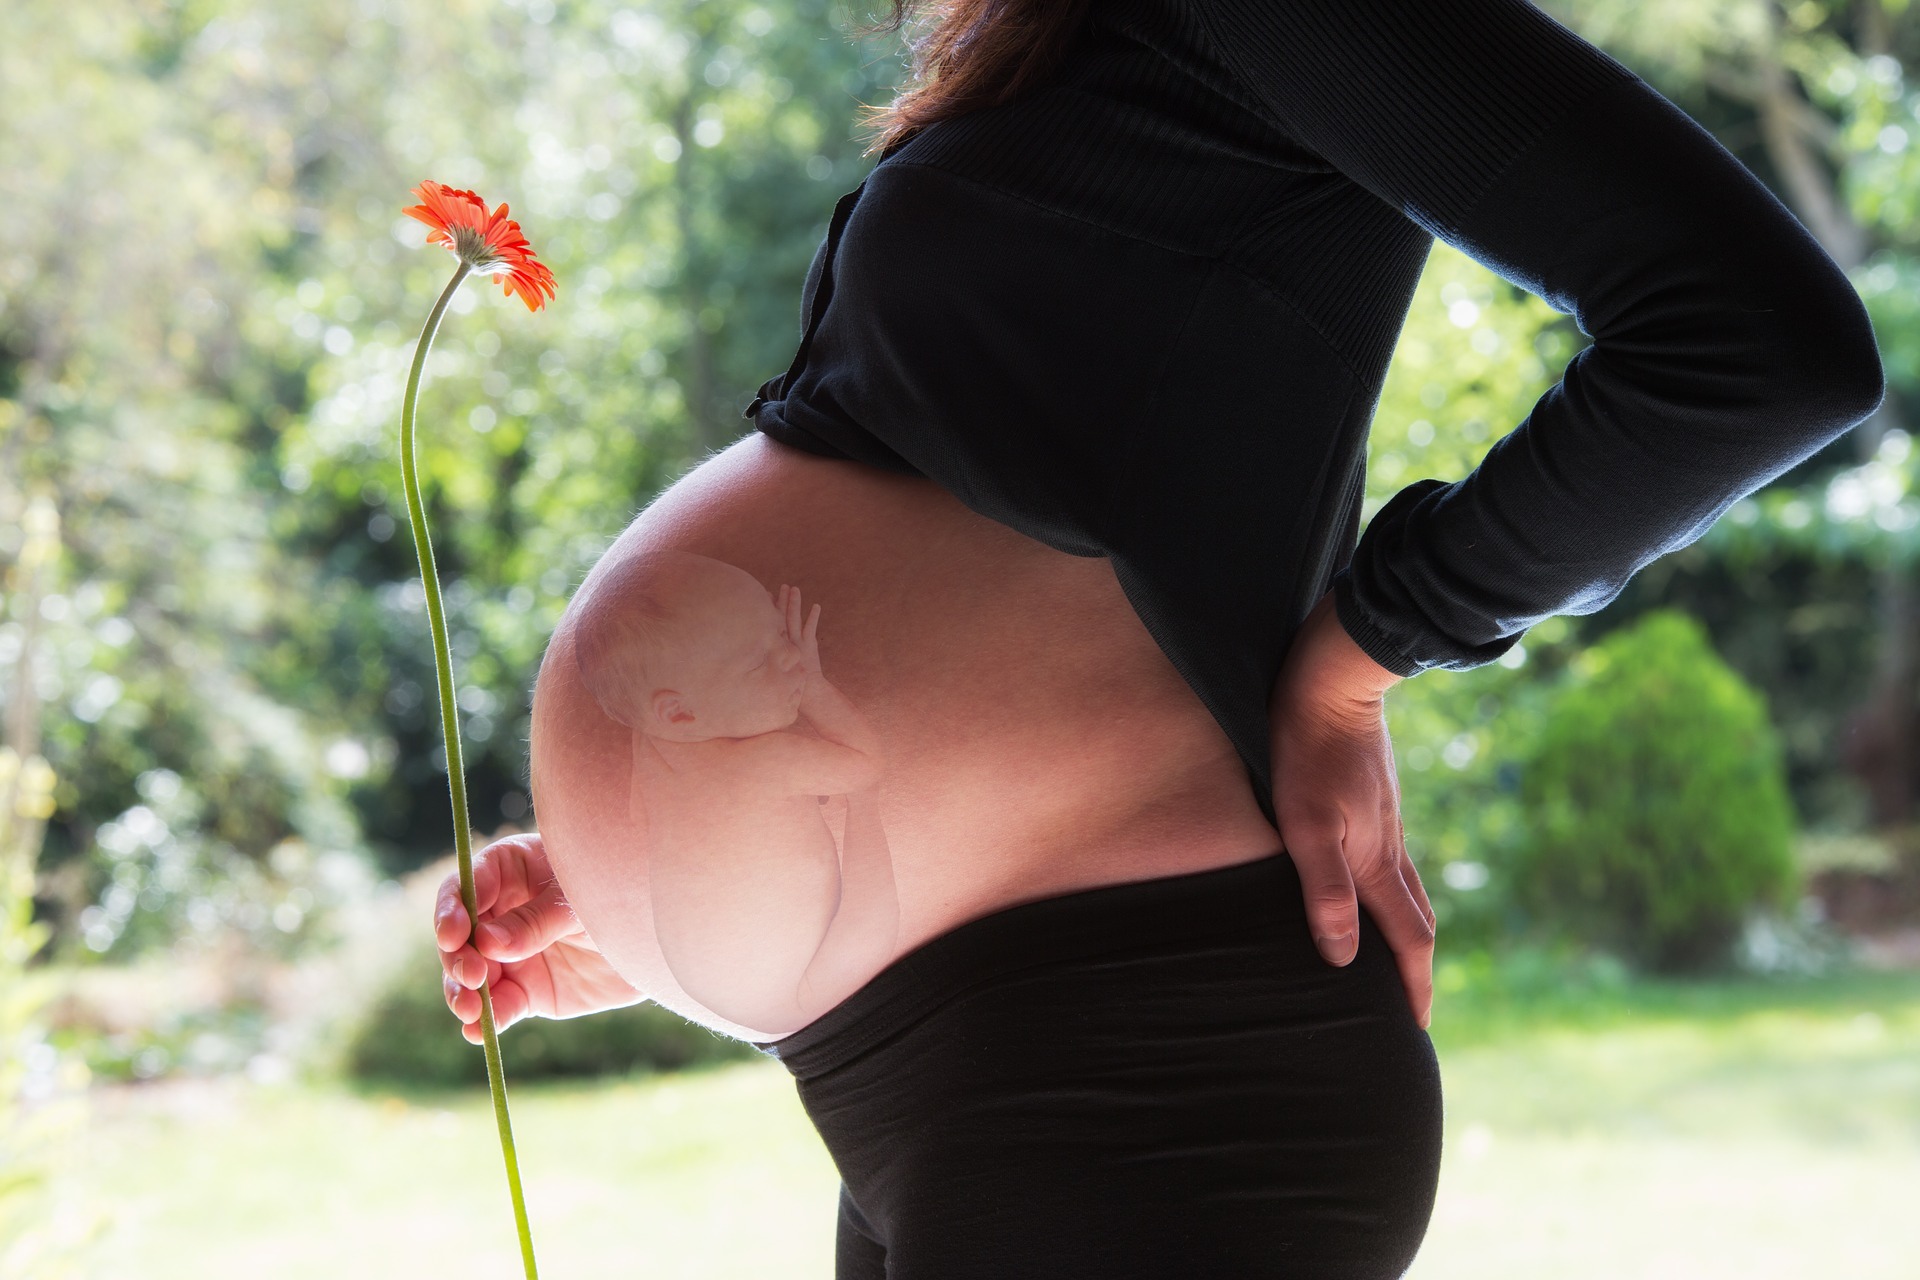 pierdere în greutate 33 săptămâni gravidă)